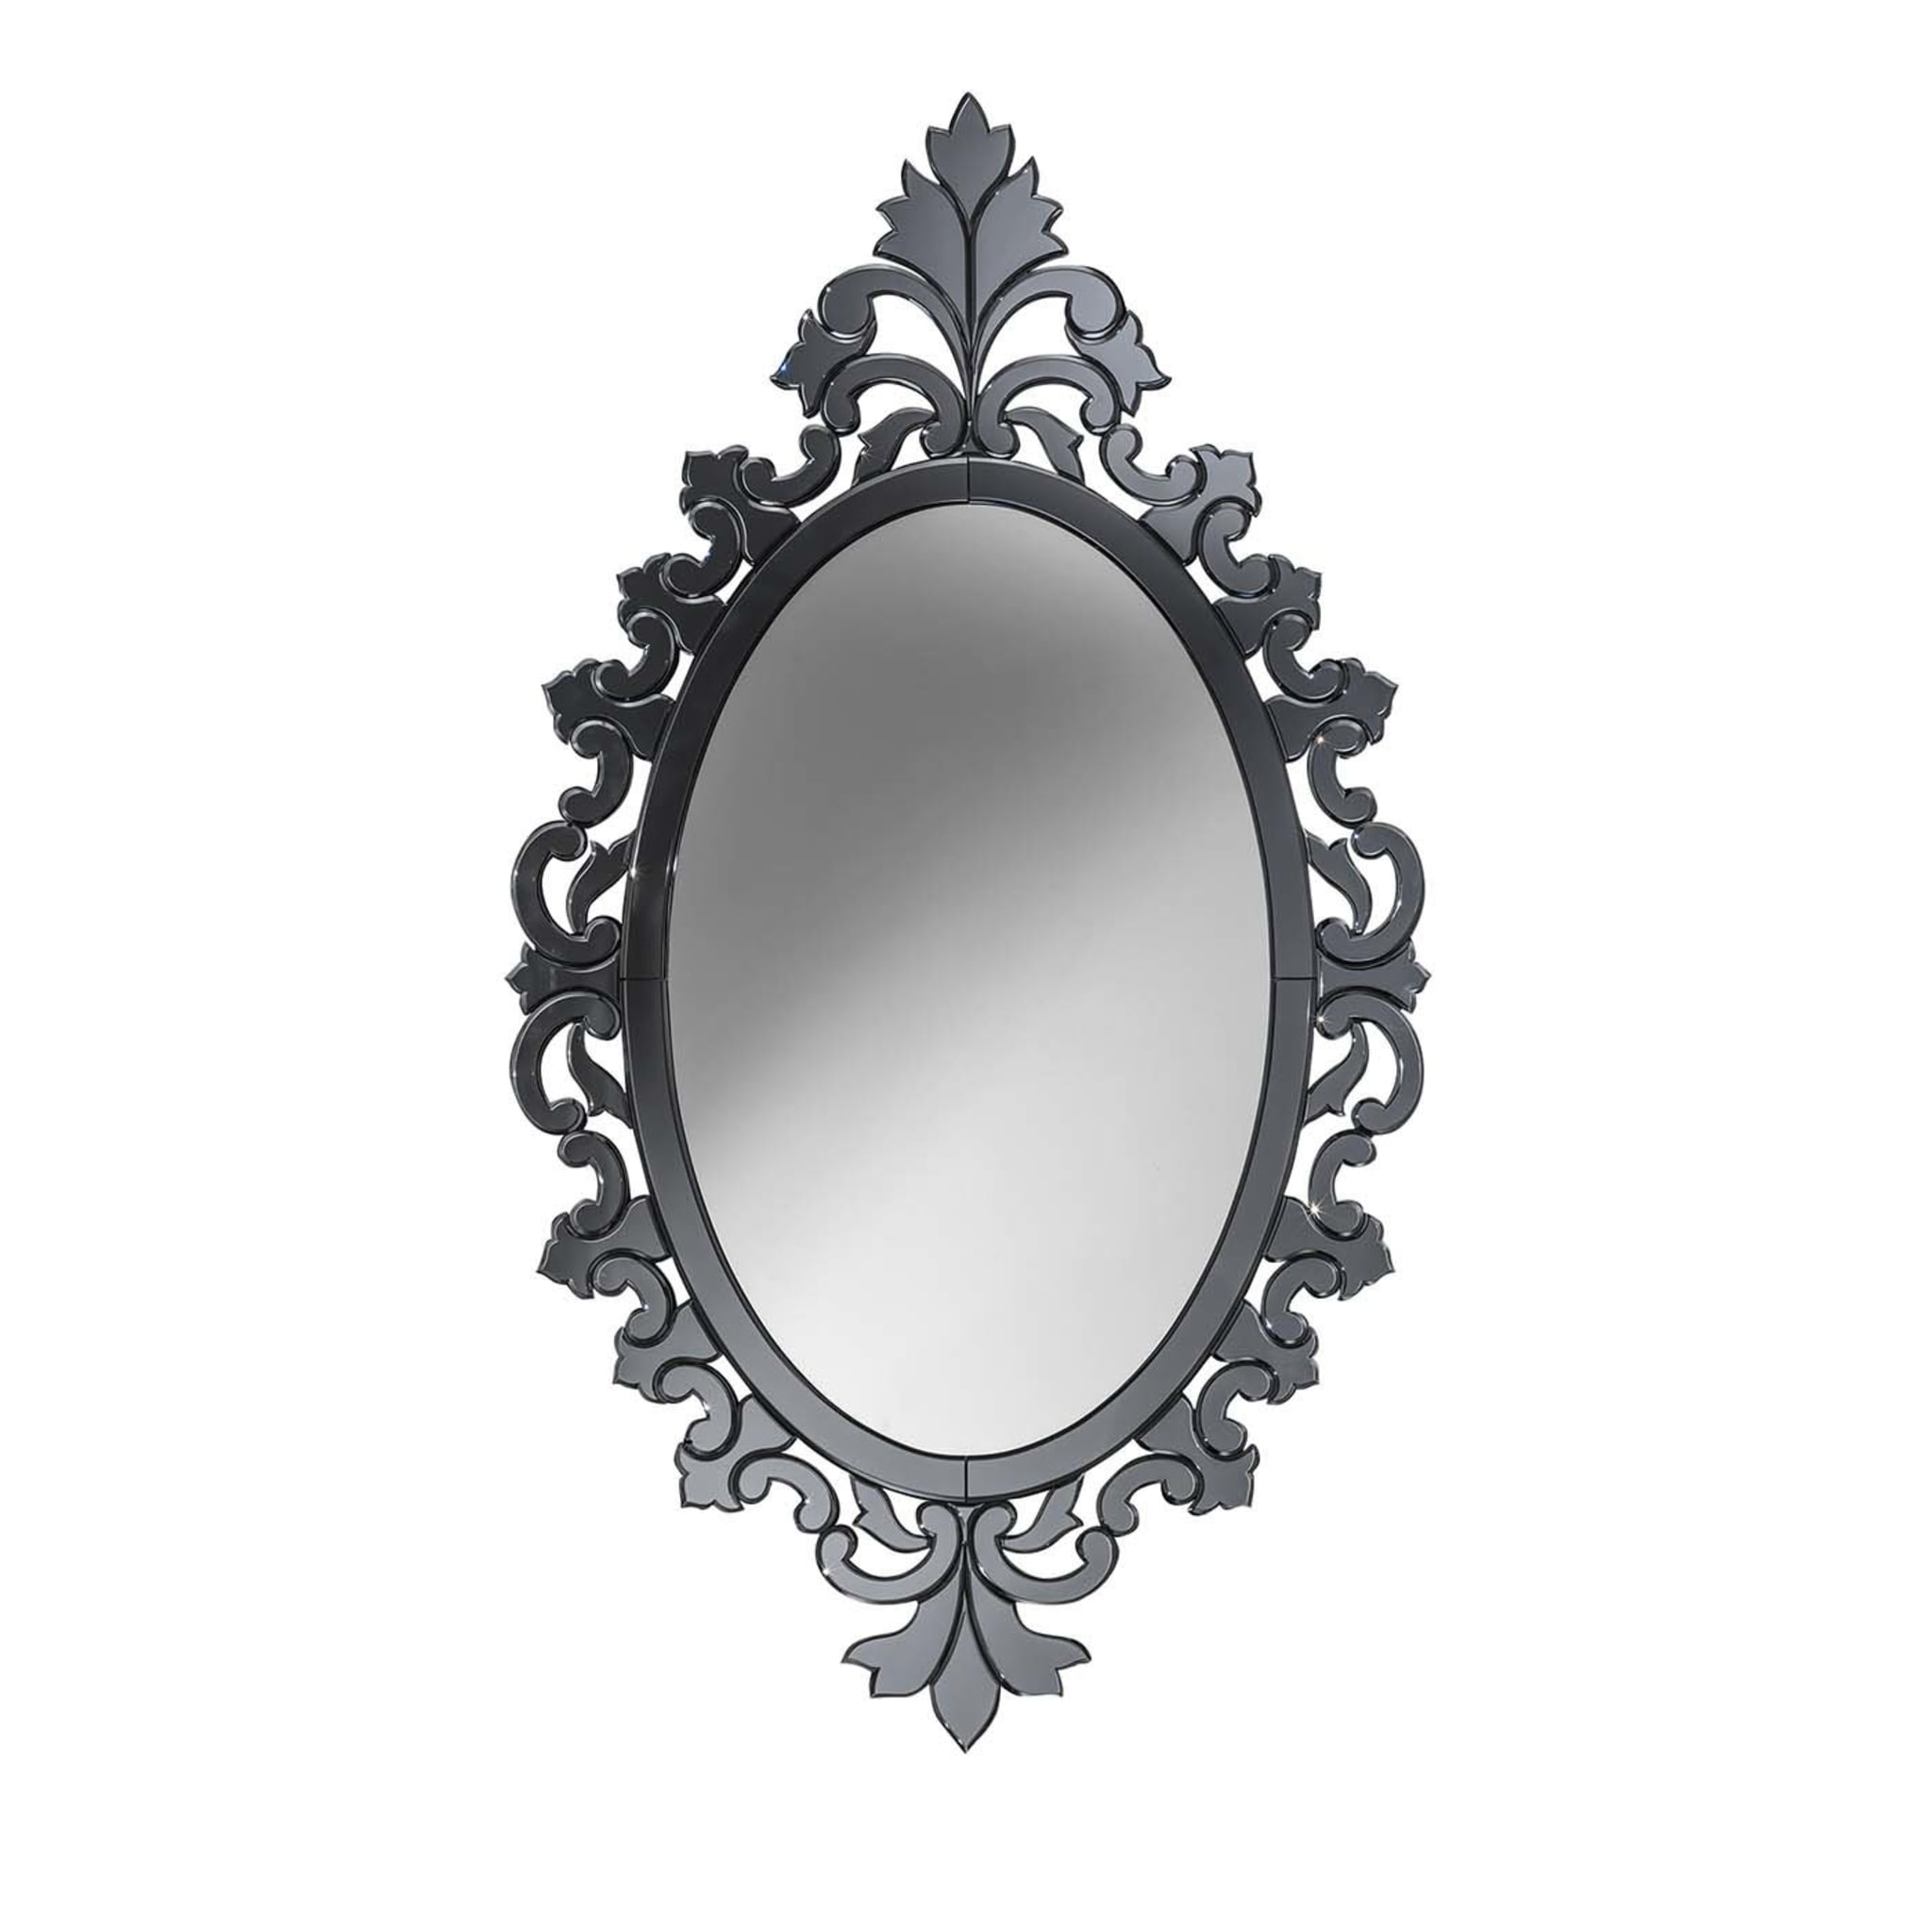 Specchio Delle Mie Brame Mirror - Main view